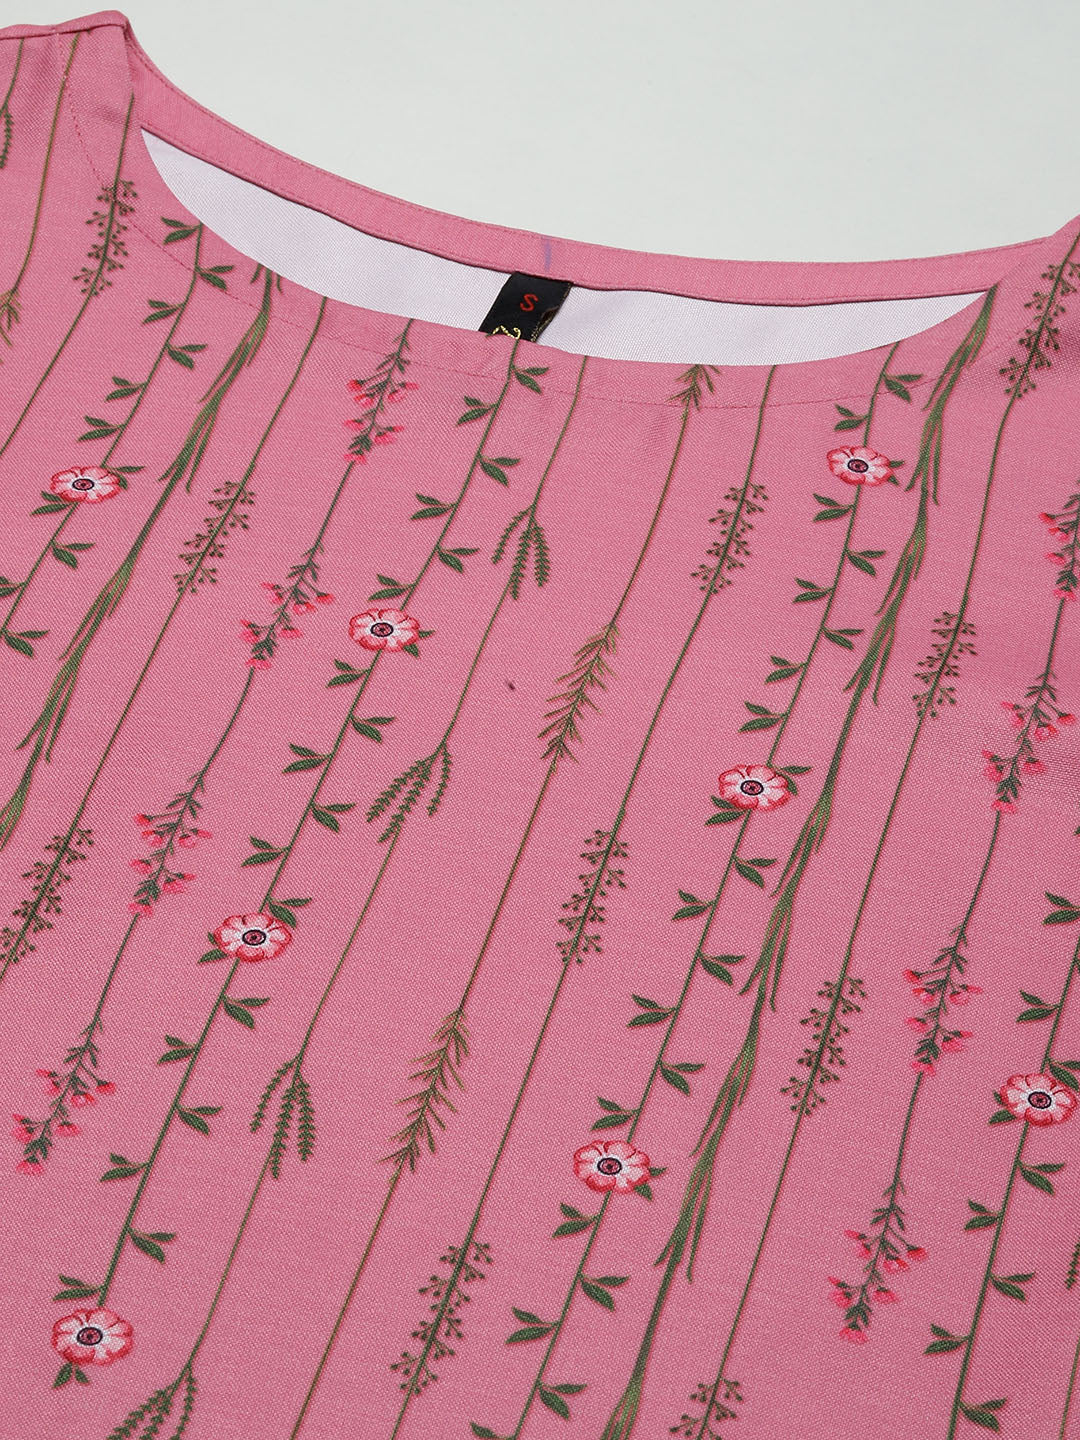 Women's Pink Color Digital Printed Straight Kurta And Pant Set - Ziyaa